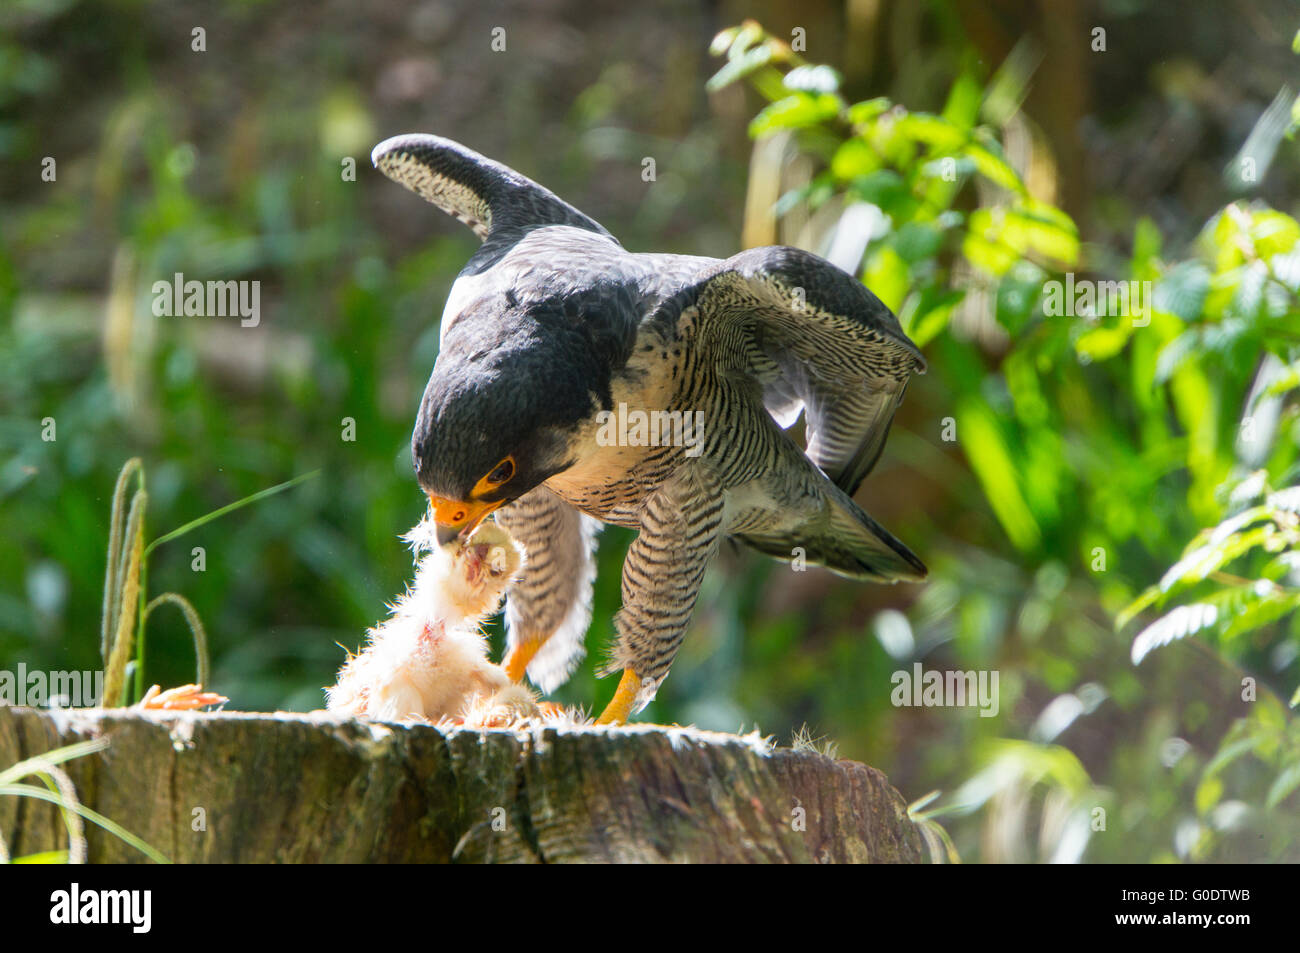 falco catches prey Stock Photo